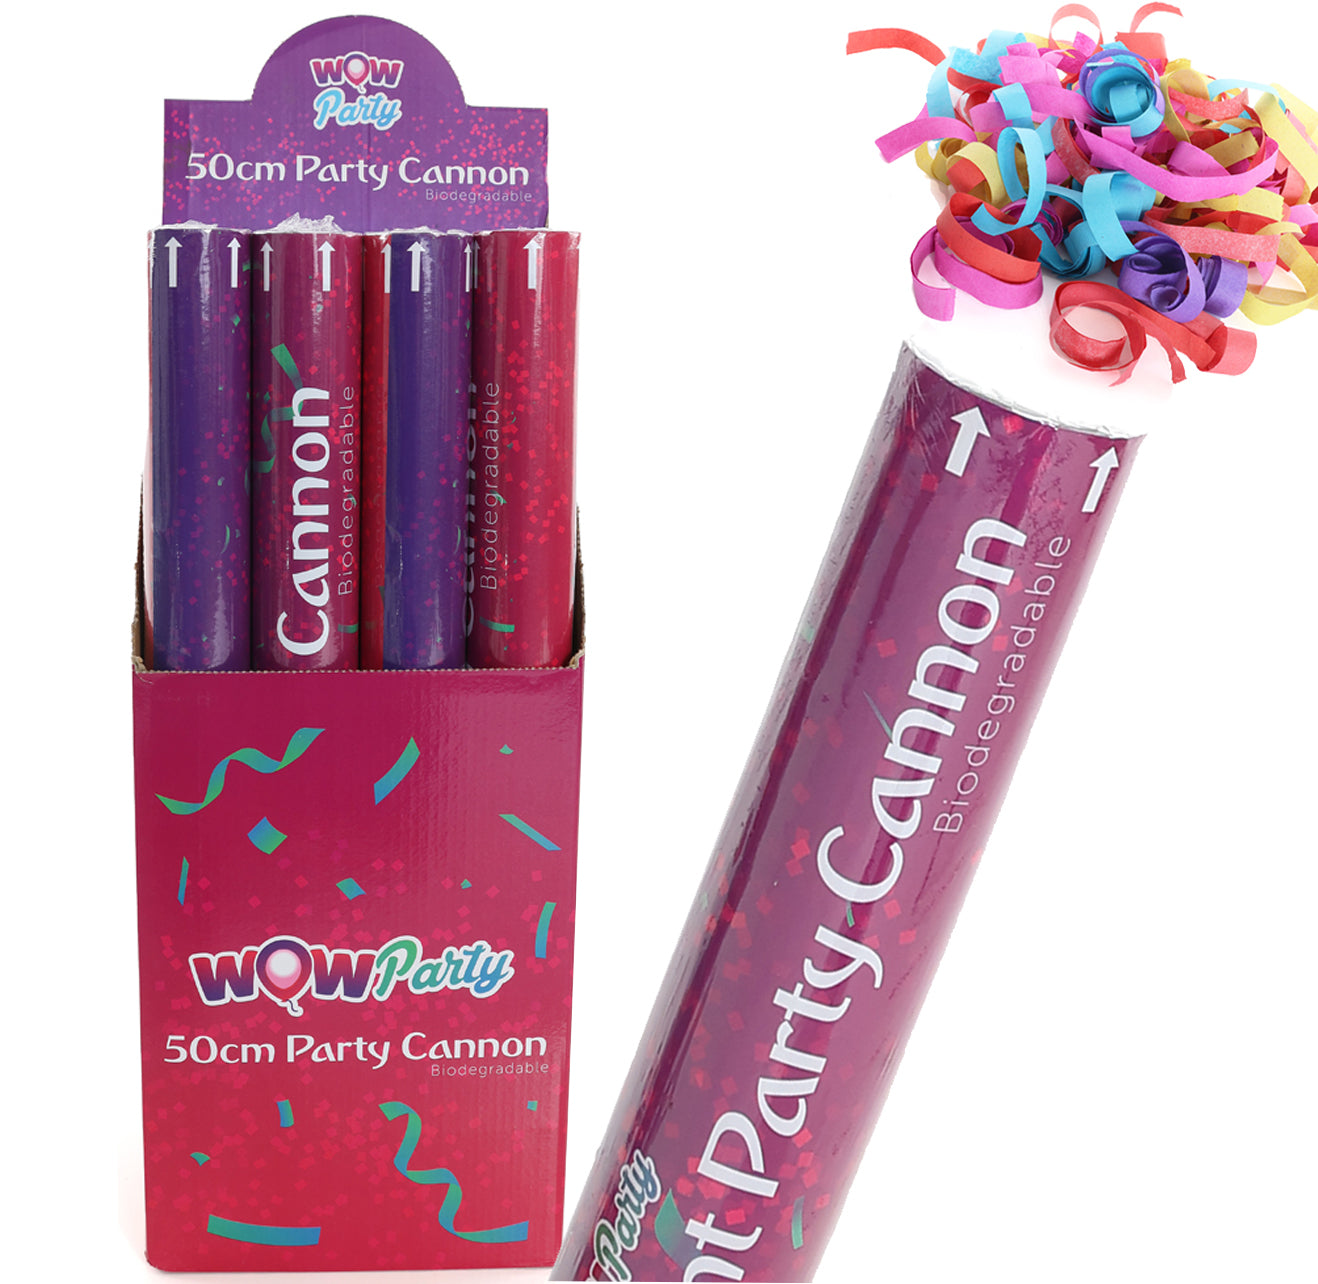 50cm Confetti Cannon with Multicolour Confetti Biodegradable